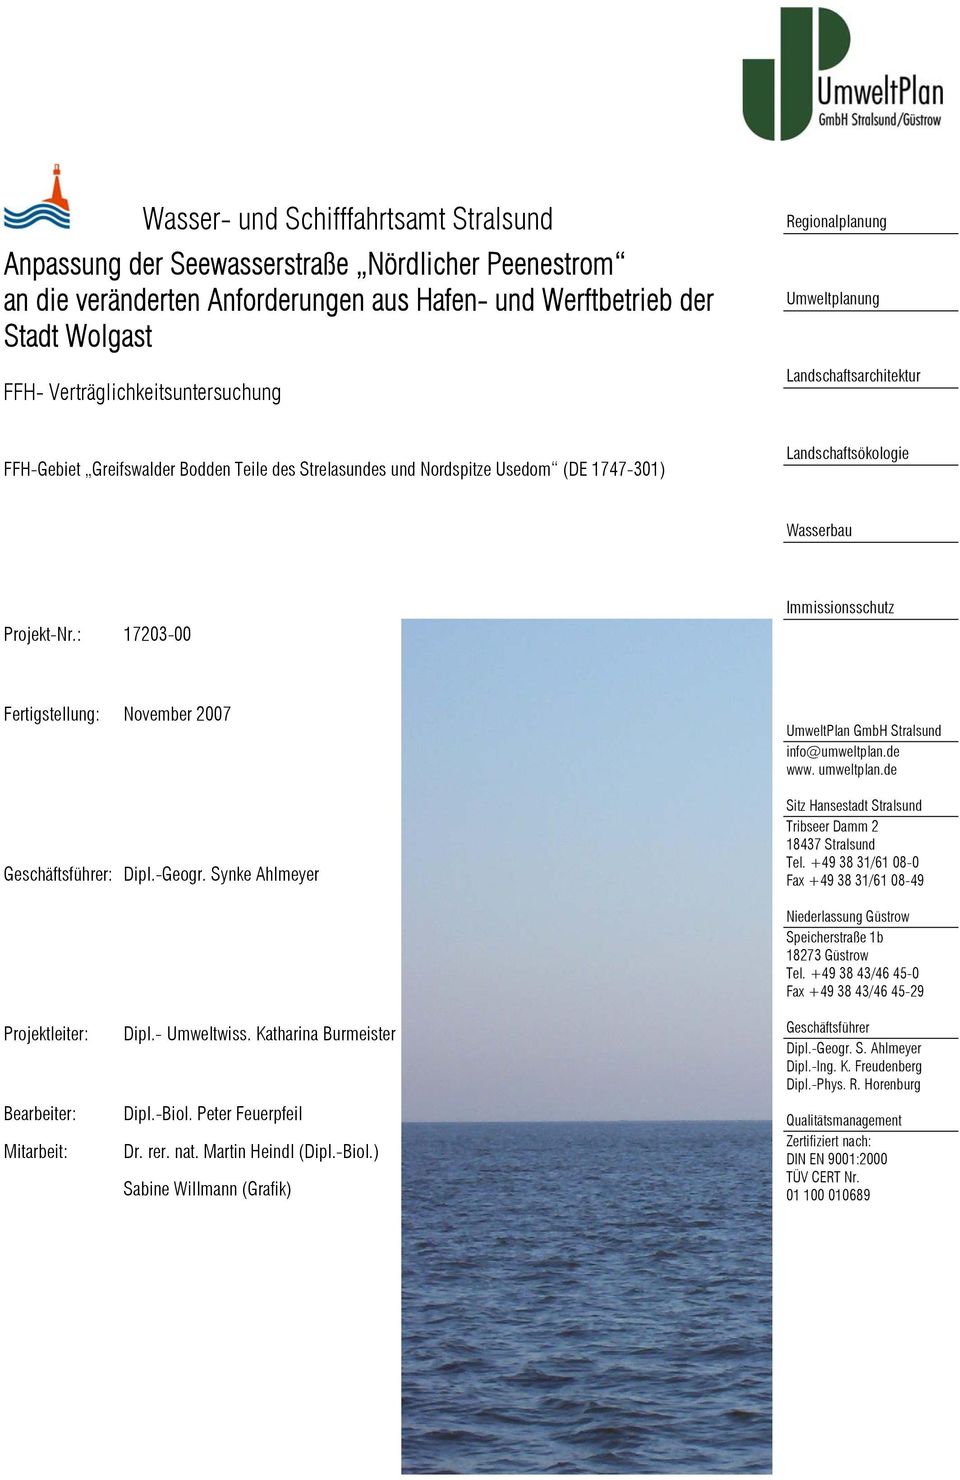 Wasserbau Projekt-Nr.: 17203-00 Immissionsschutz Fertigstellung: November 2007 Geschäftsführer: Dipl.-Geogr. Synke Ahlmeyer GmbH Stralsund info@umweltplan.de www. umweltplan.